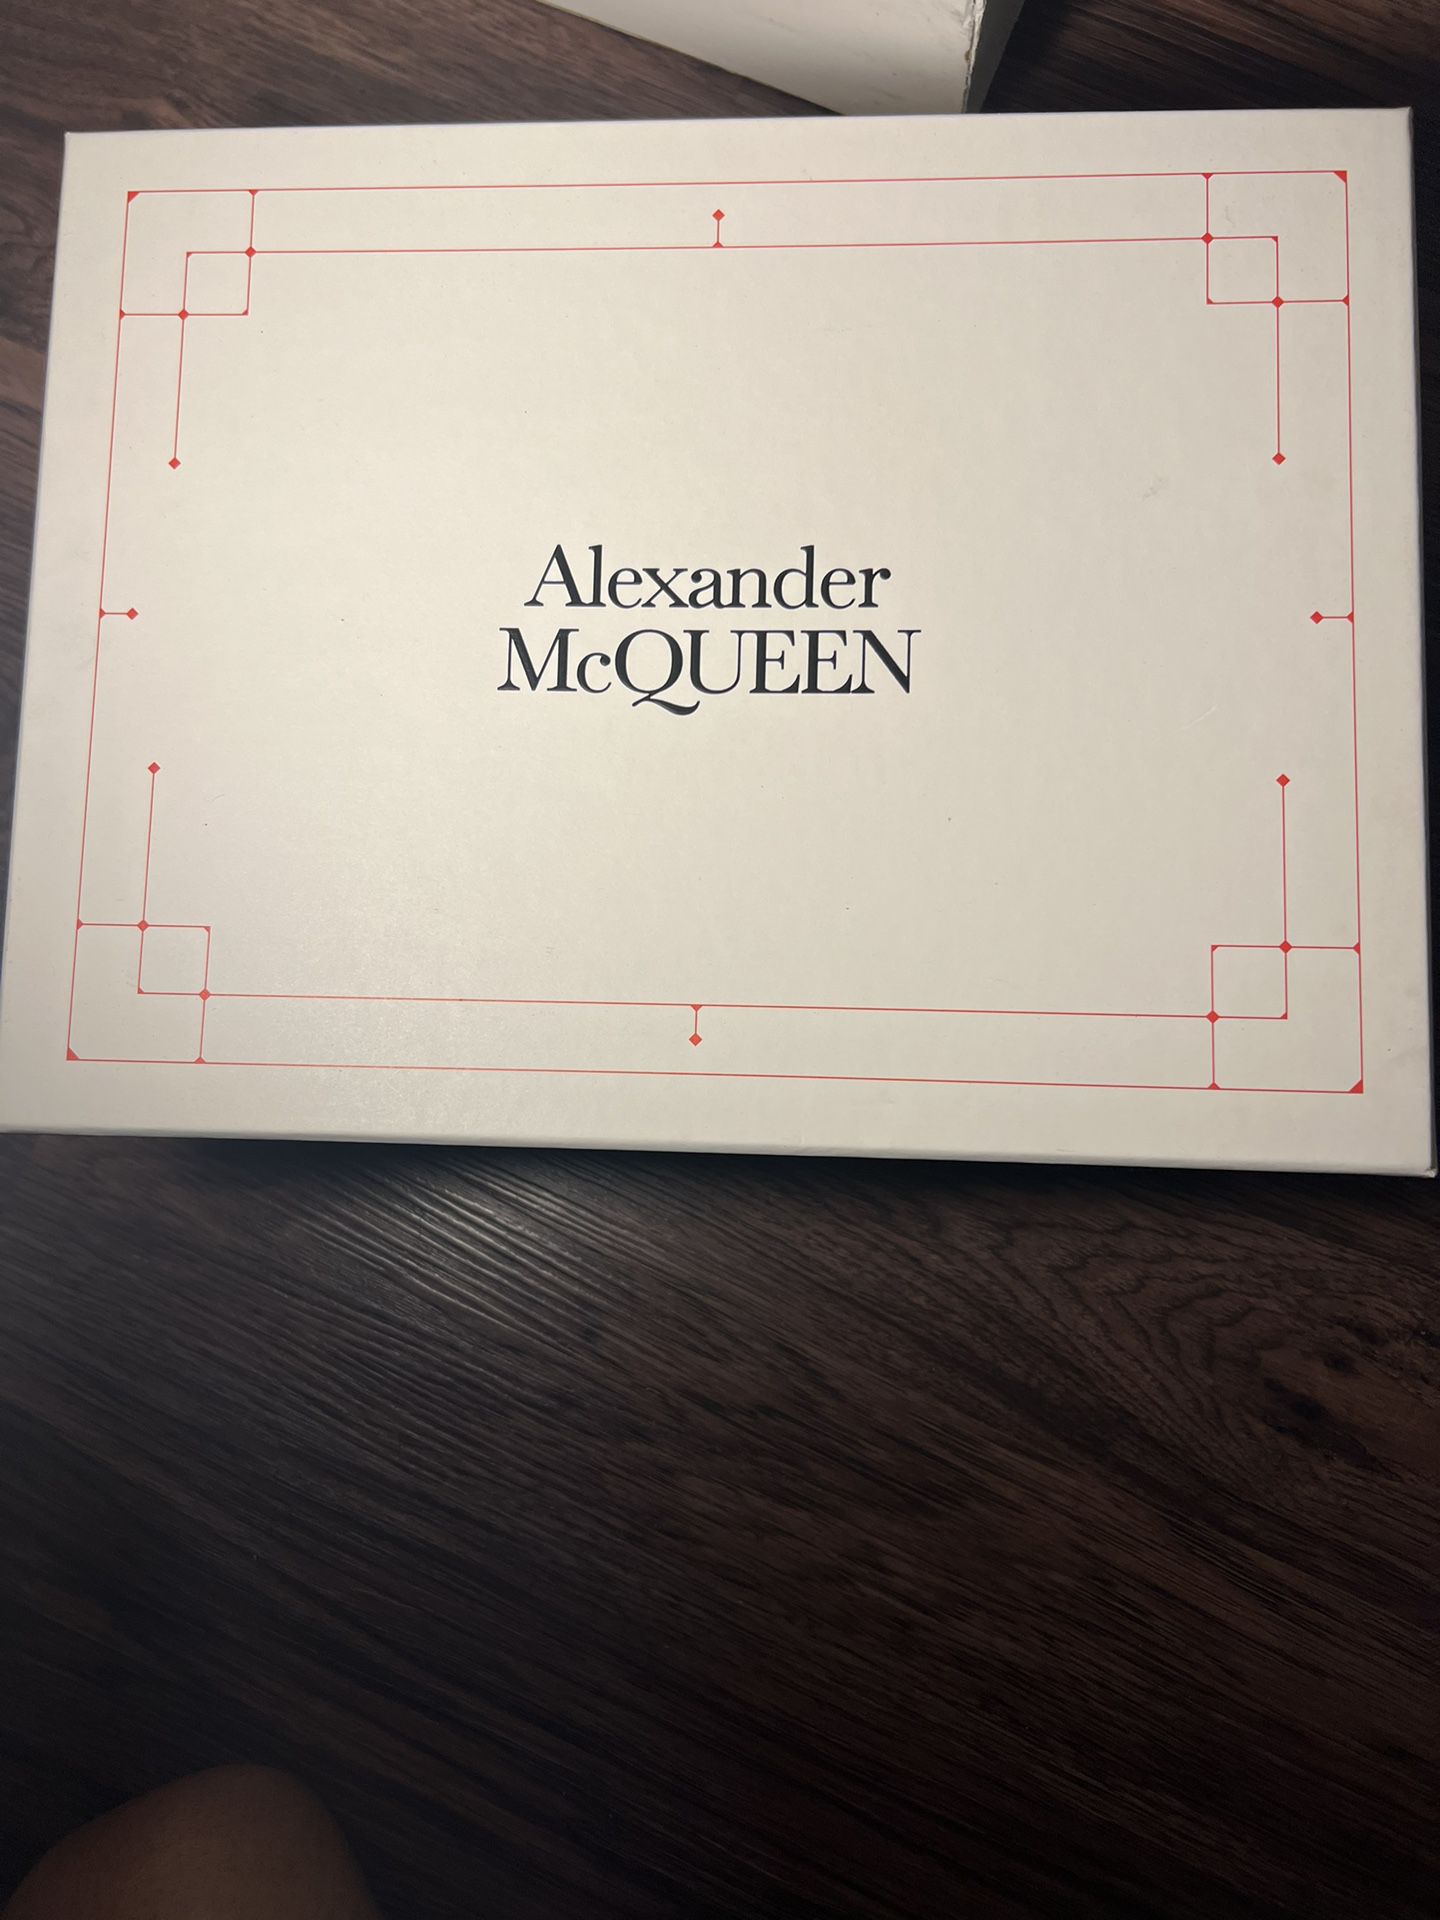 Shoe’s Premium/ Alexander McQueen for Sale in Las Vegas, NV - OfferUp